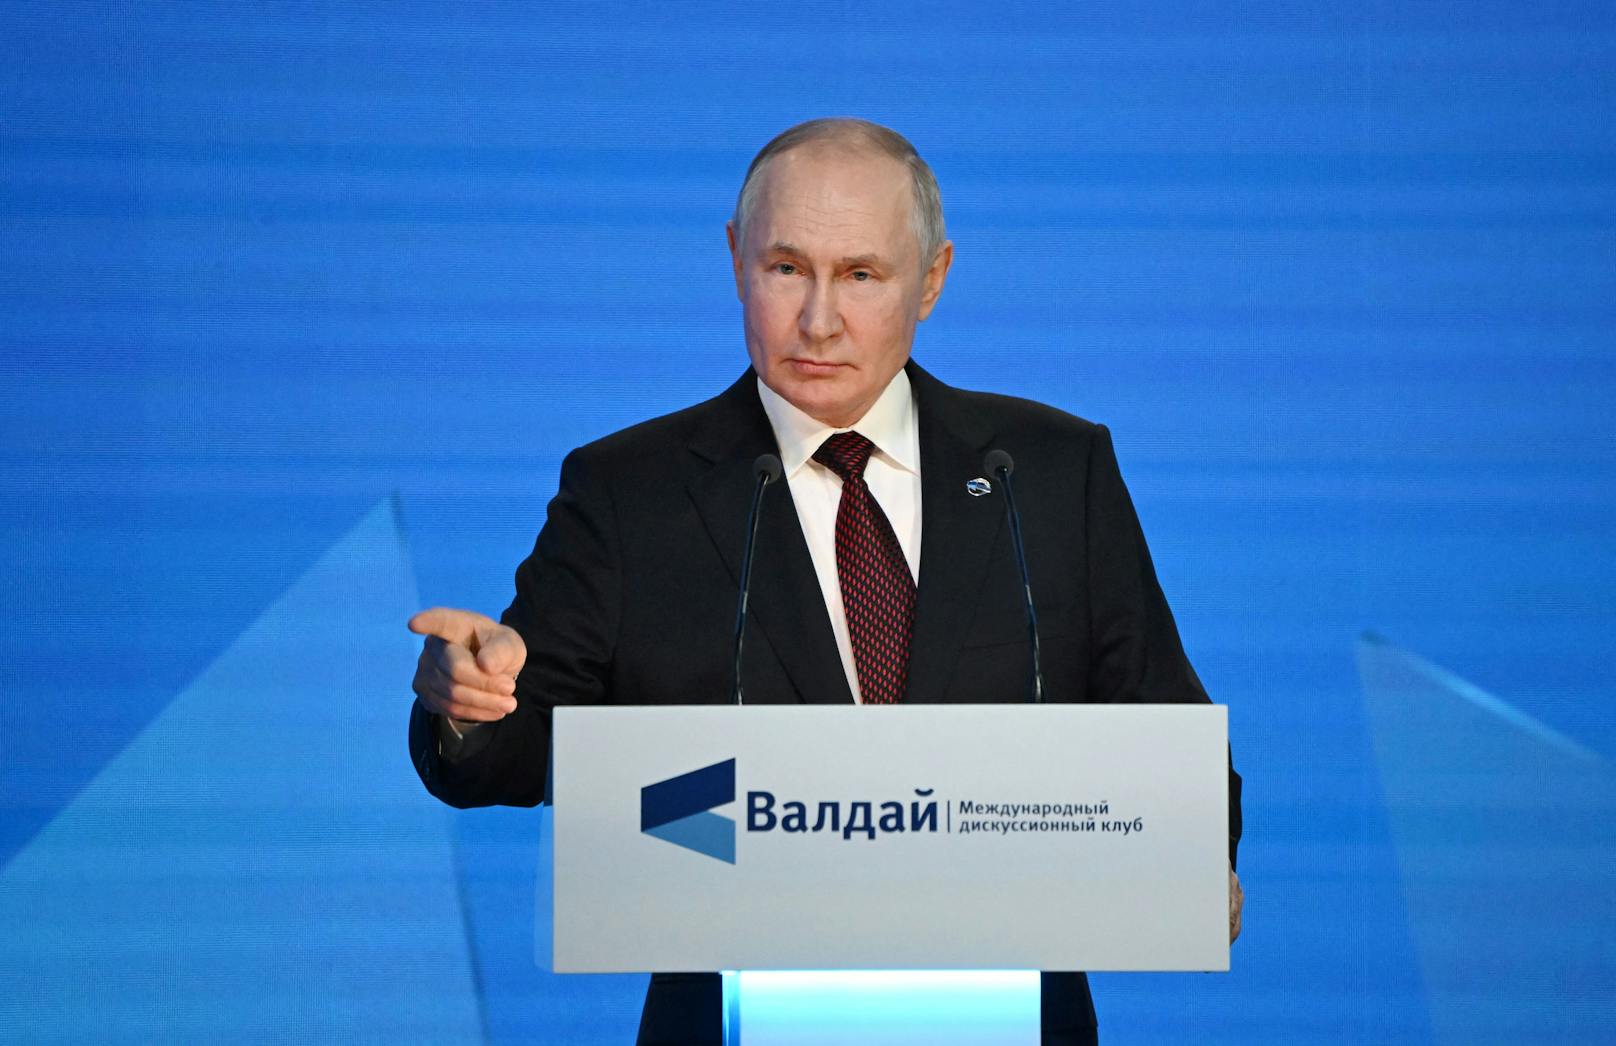 Kritik am Westen – Putin will "neue Welt errichten"